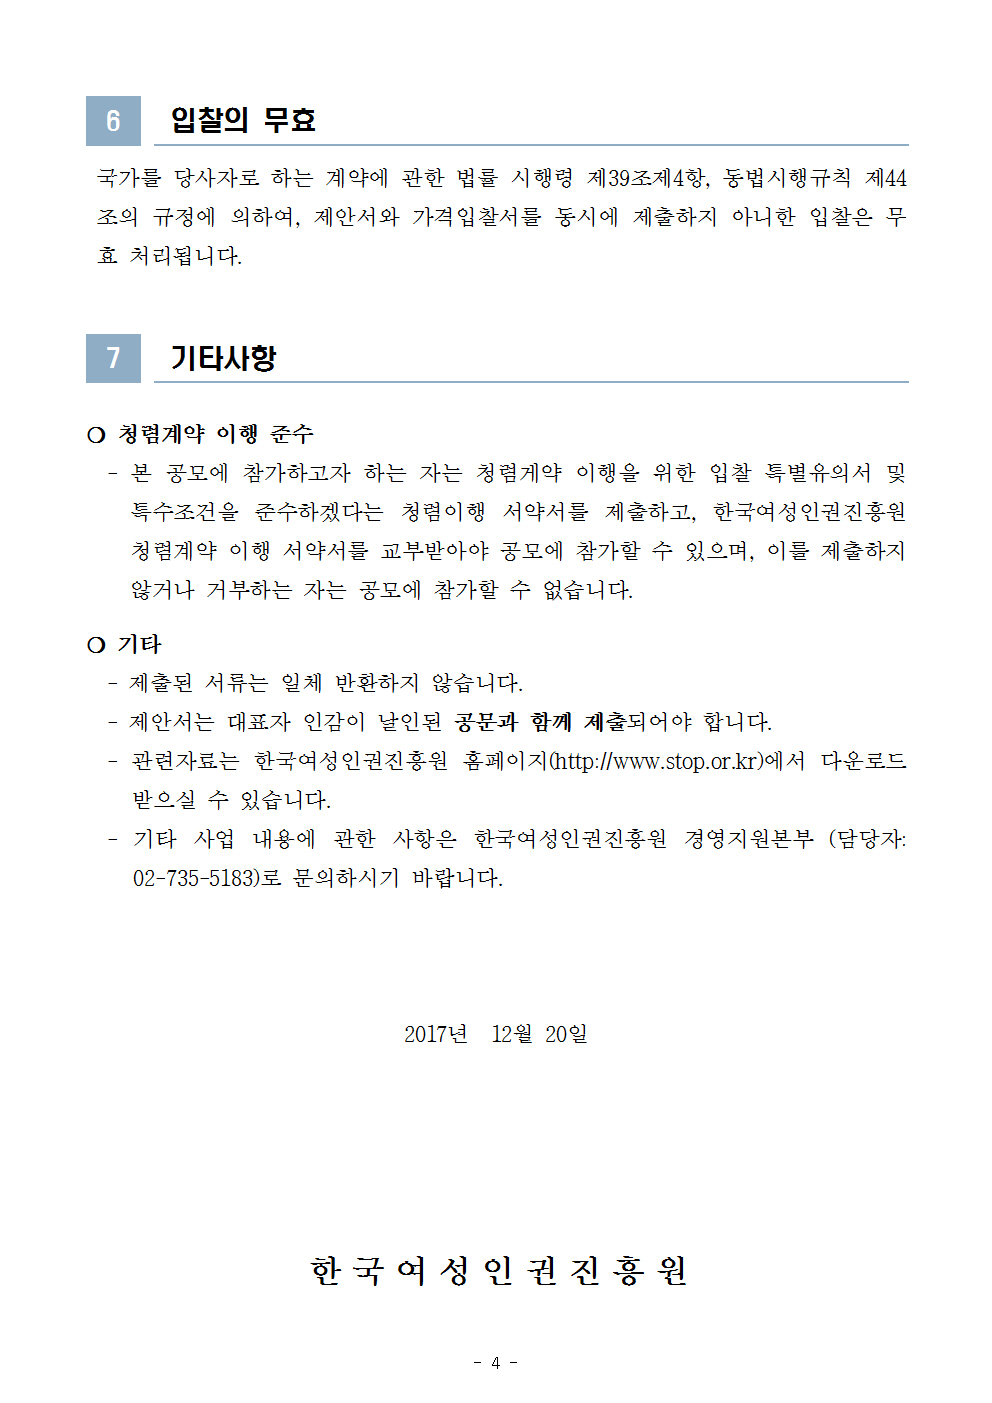 한국여성인권진흥원 2018년도 그룹웨어시스템 유지보수 공모 시행 공고문 4page.jpg